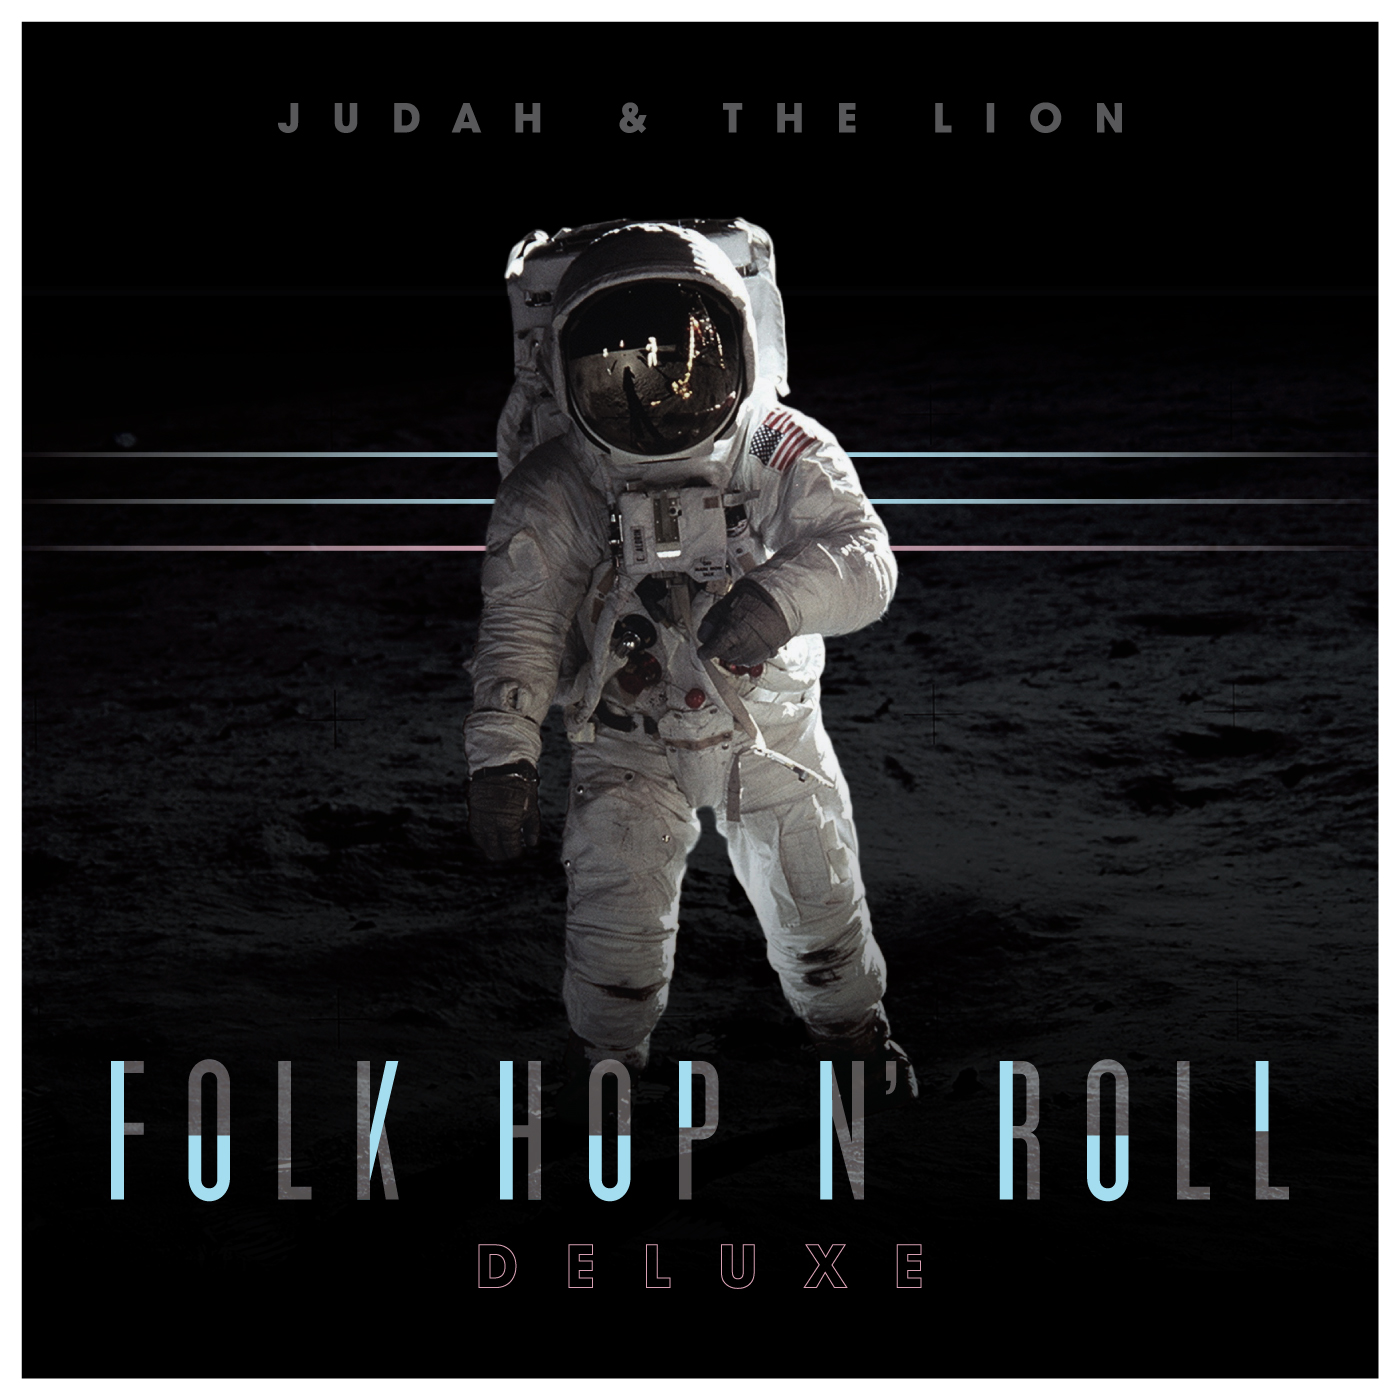 Judah & the Lion - Folk Hop N' Roll (Deluxe)